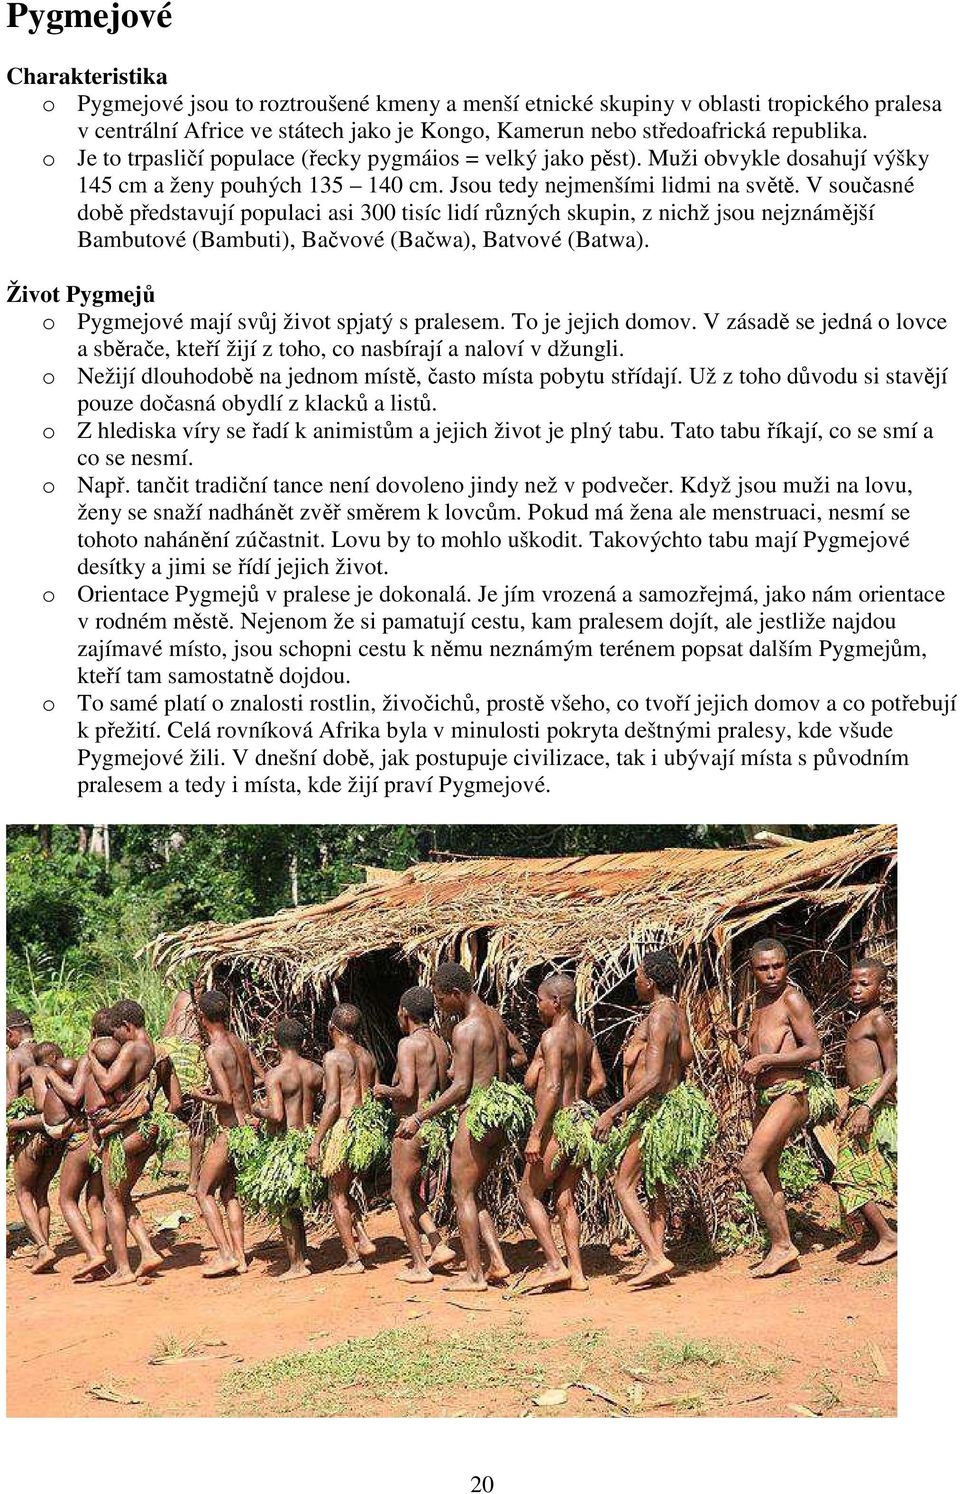 V současné době představují populaci asi 300 tisíc lidí různých skupin, z nichž jsou nejznámější Bambutové (Bambuti), Bačvové (Bačwa), Batvové (Batwa).